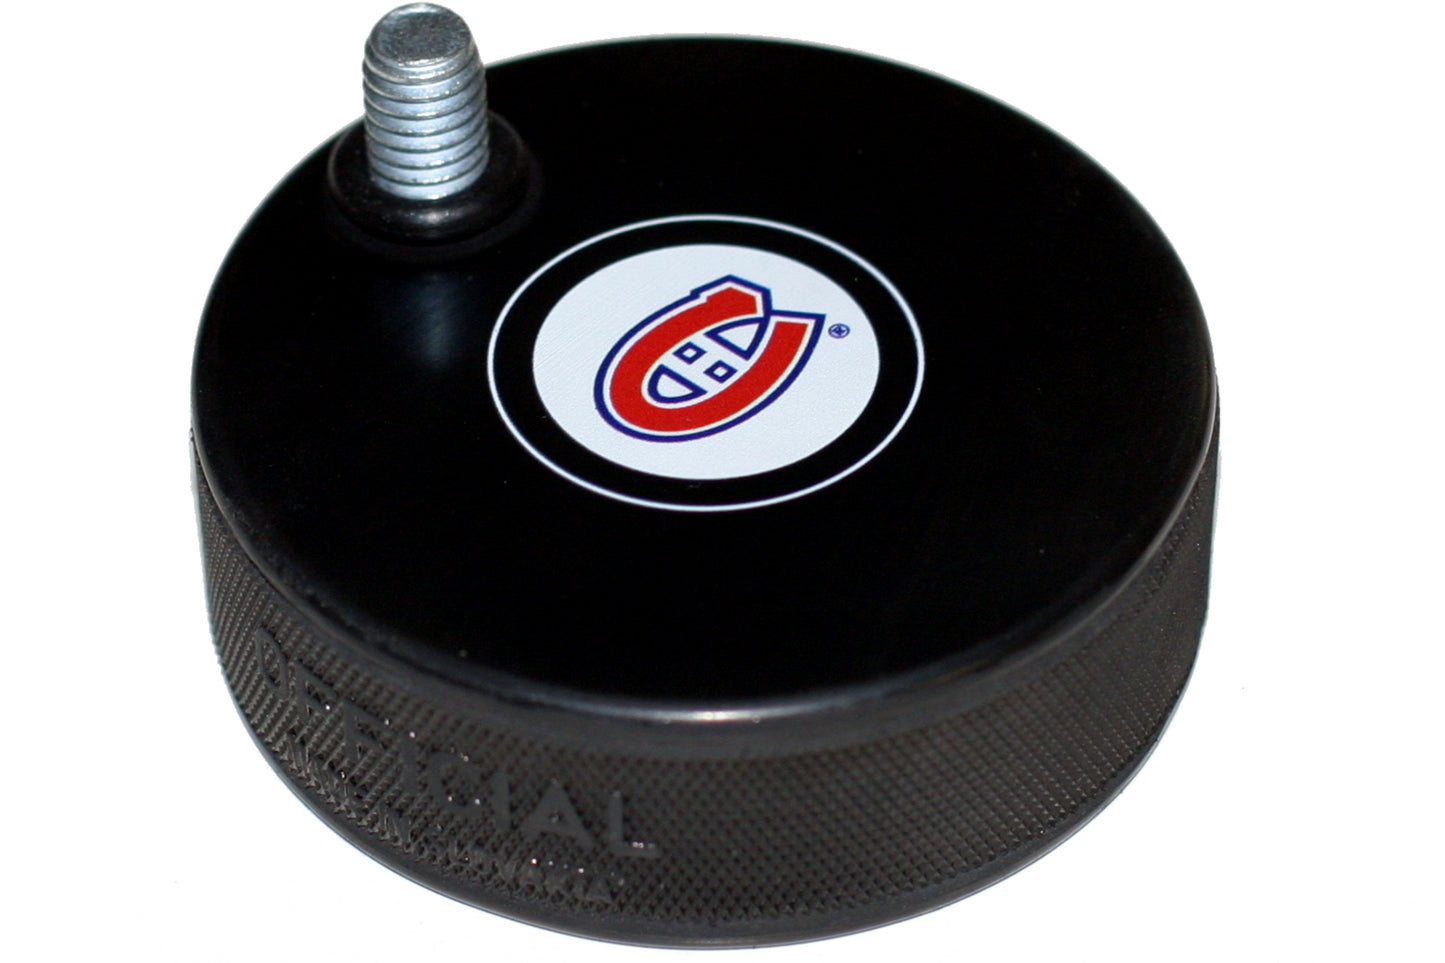 Montreal Canadiens Hockey Puck Beer Tap Handle Display